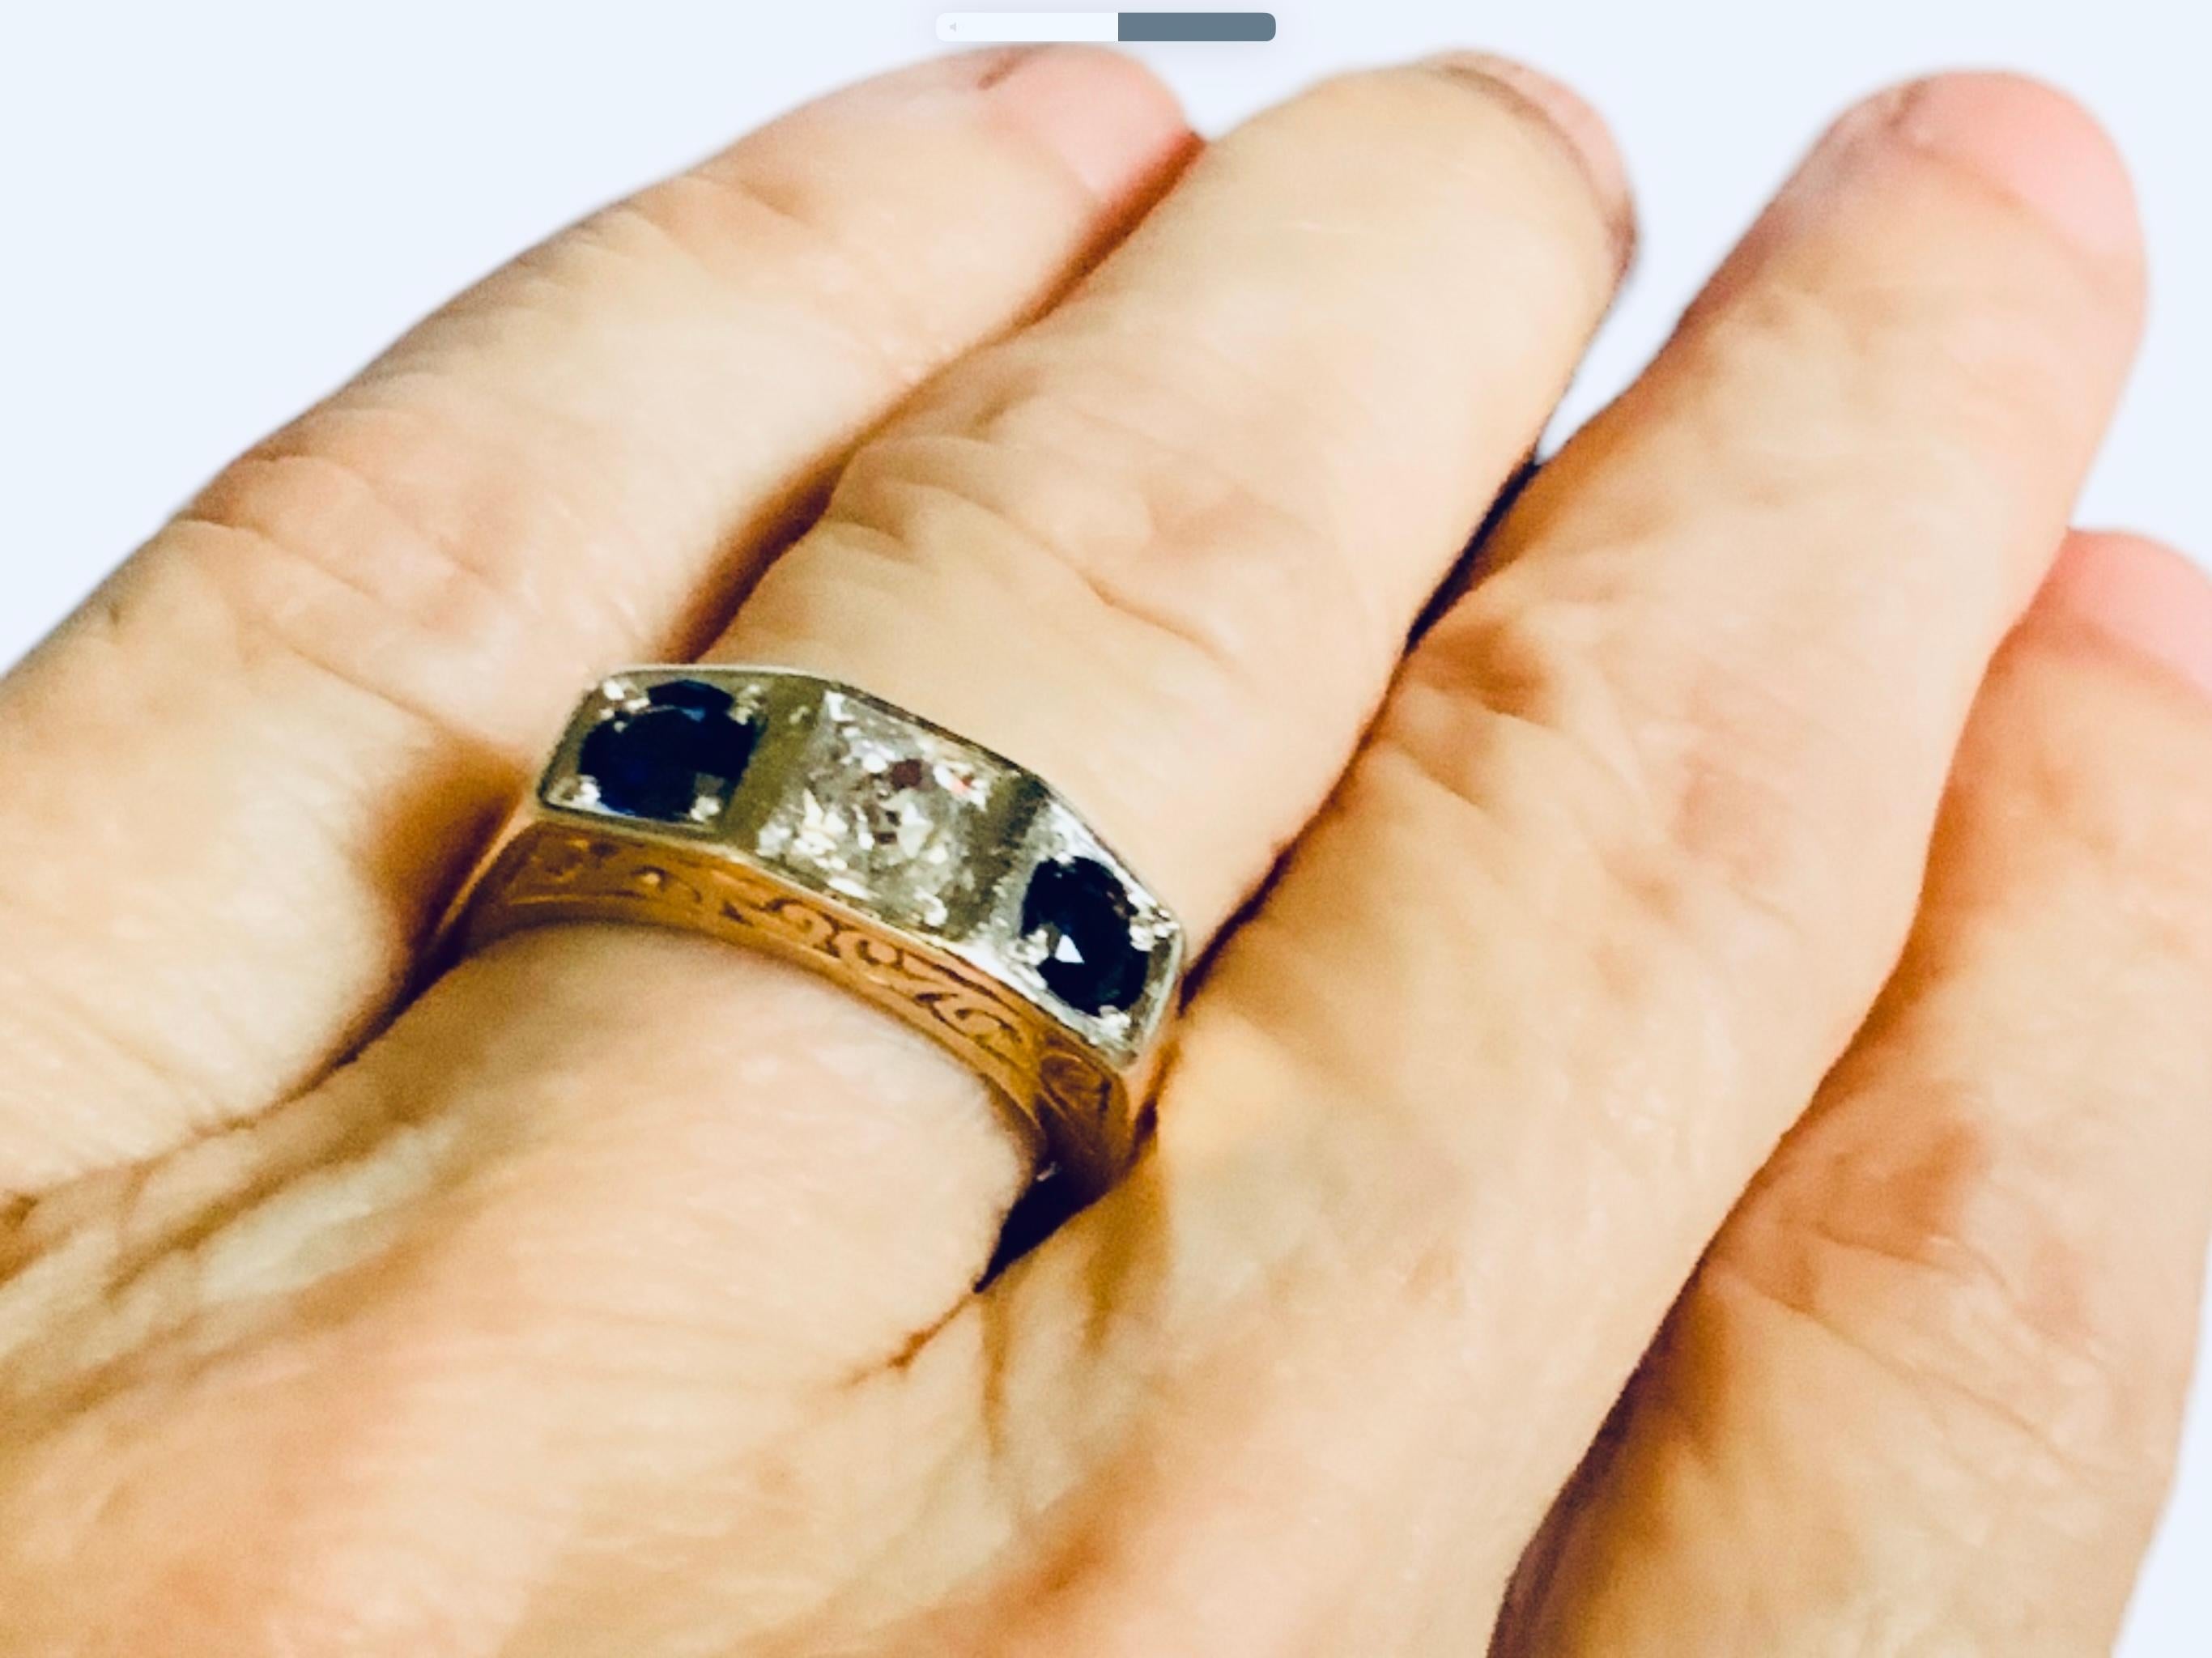 Dies ist ein Art Deco 14K Gelbgold, Diamant und Saphir Strumpfband Ring. Es zeigt einen goldenen Ring mit einer Spitze, die durch zwei kleine Quadrate an den Seiten und ein größeres in der Mitte geteilt ist. Die Mitte wird von einem alten